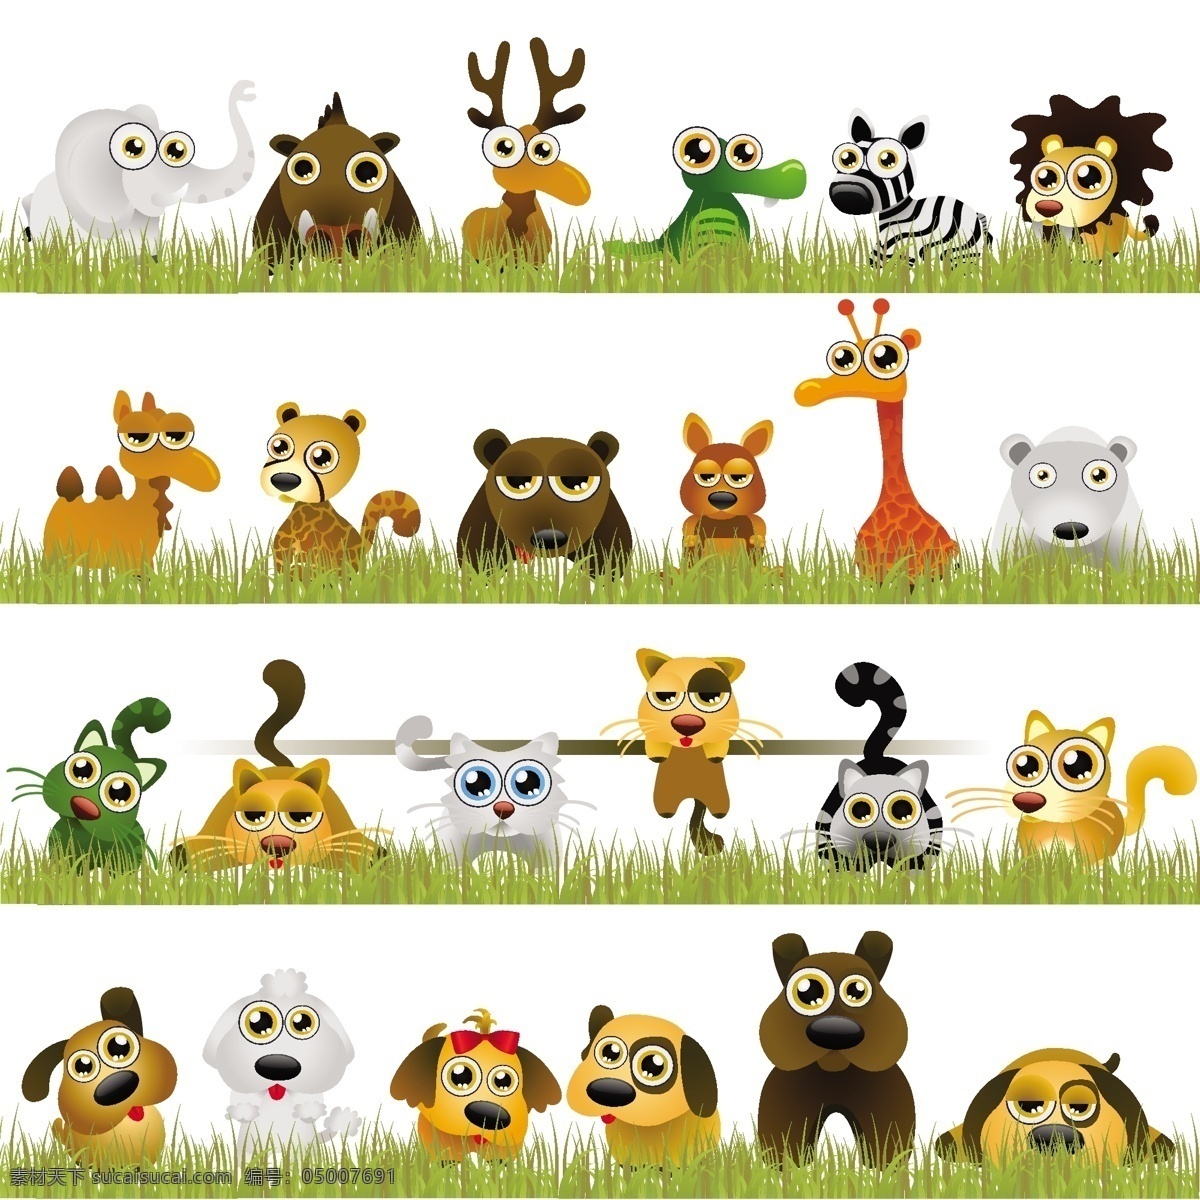 多种动物 多种 动物 卡通 可爱 大象 河马 鹿 鳄鱼 斑马 狮子 豹 老虎 熊 兔子 长颈鹿 白熊 猫 松鼠 狗 花纹花边 底纹边框 矢量